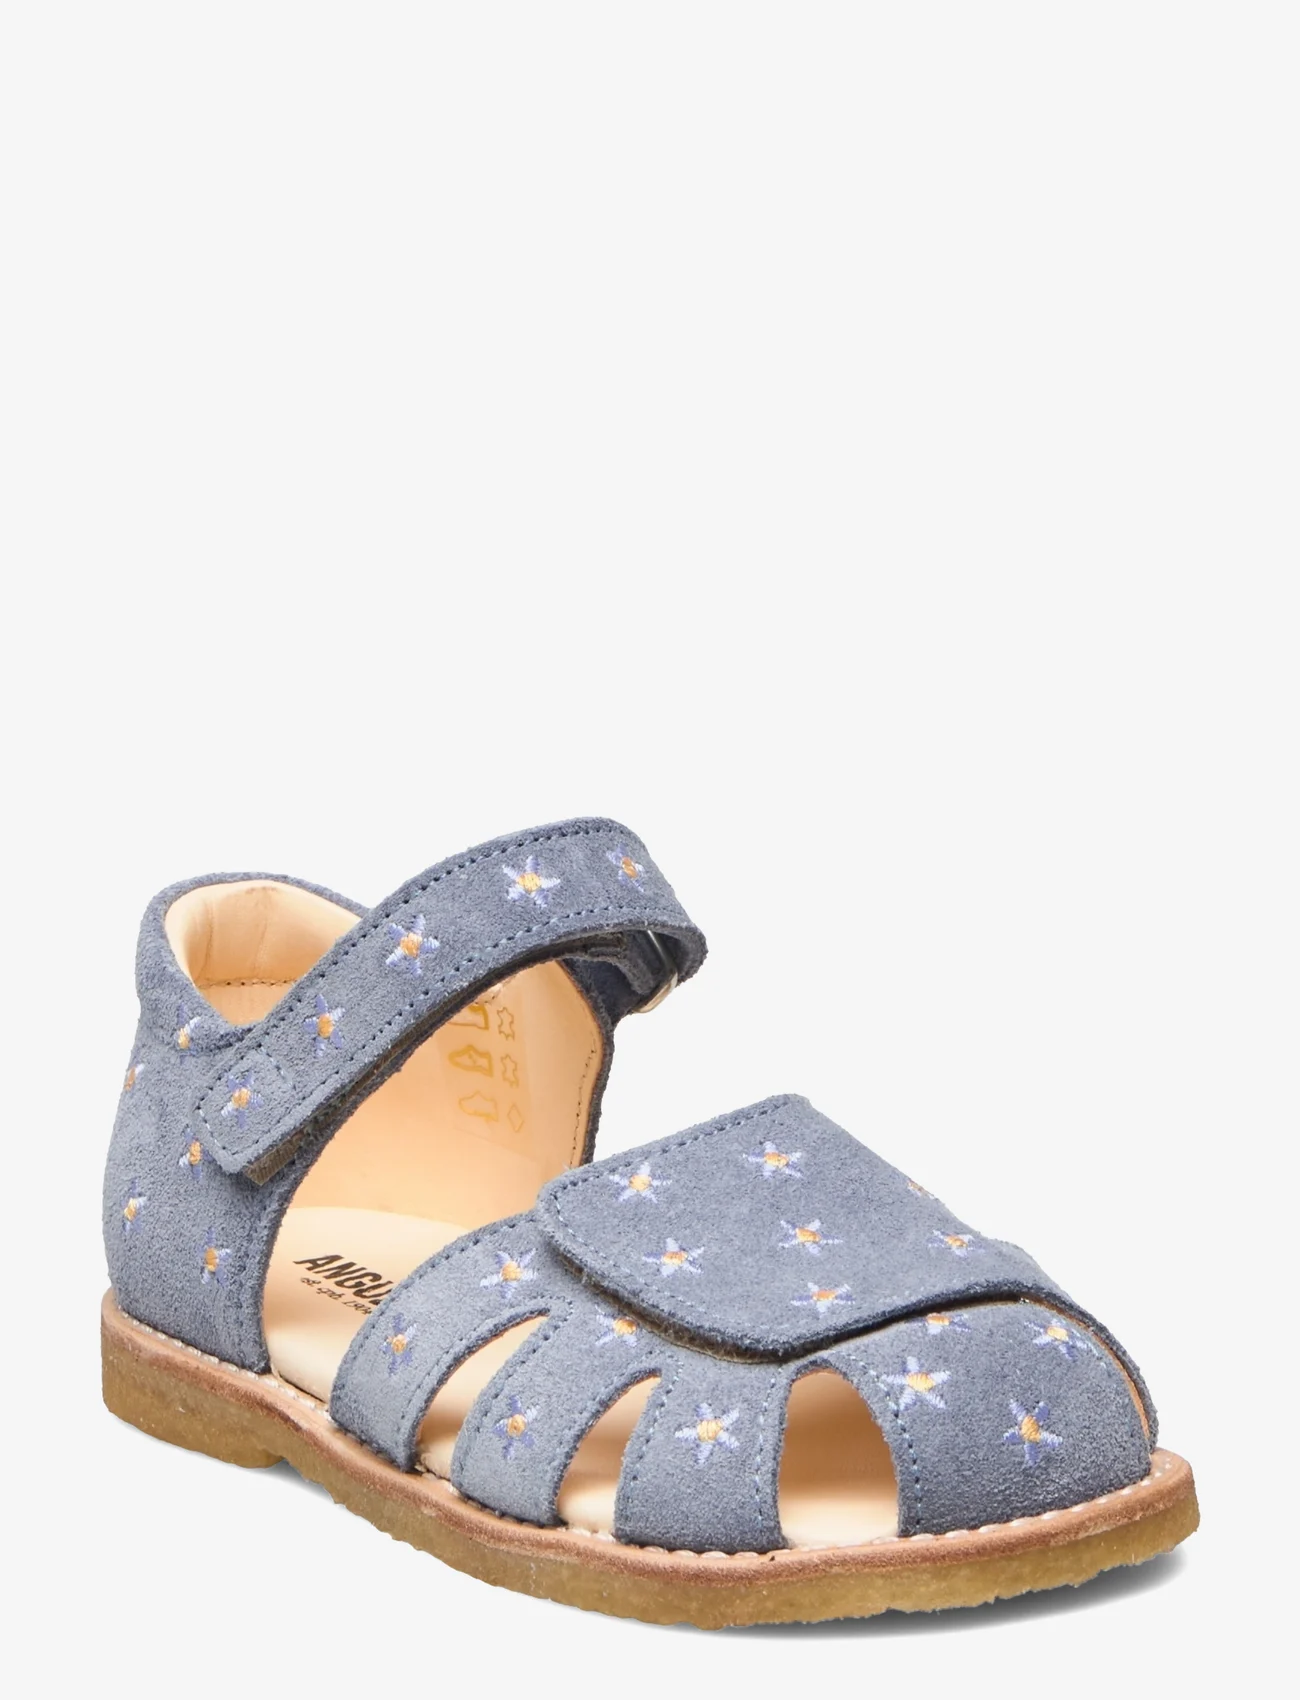 ANGULUS - Sandals - flat - closed toe -  - sommerschnäppchen - 2242 light blue - 0